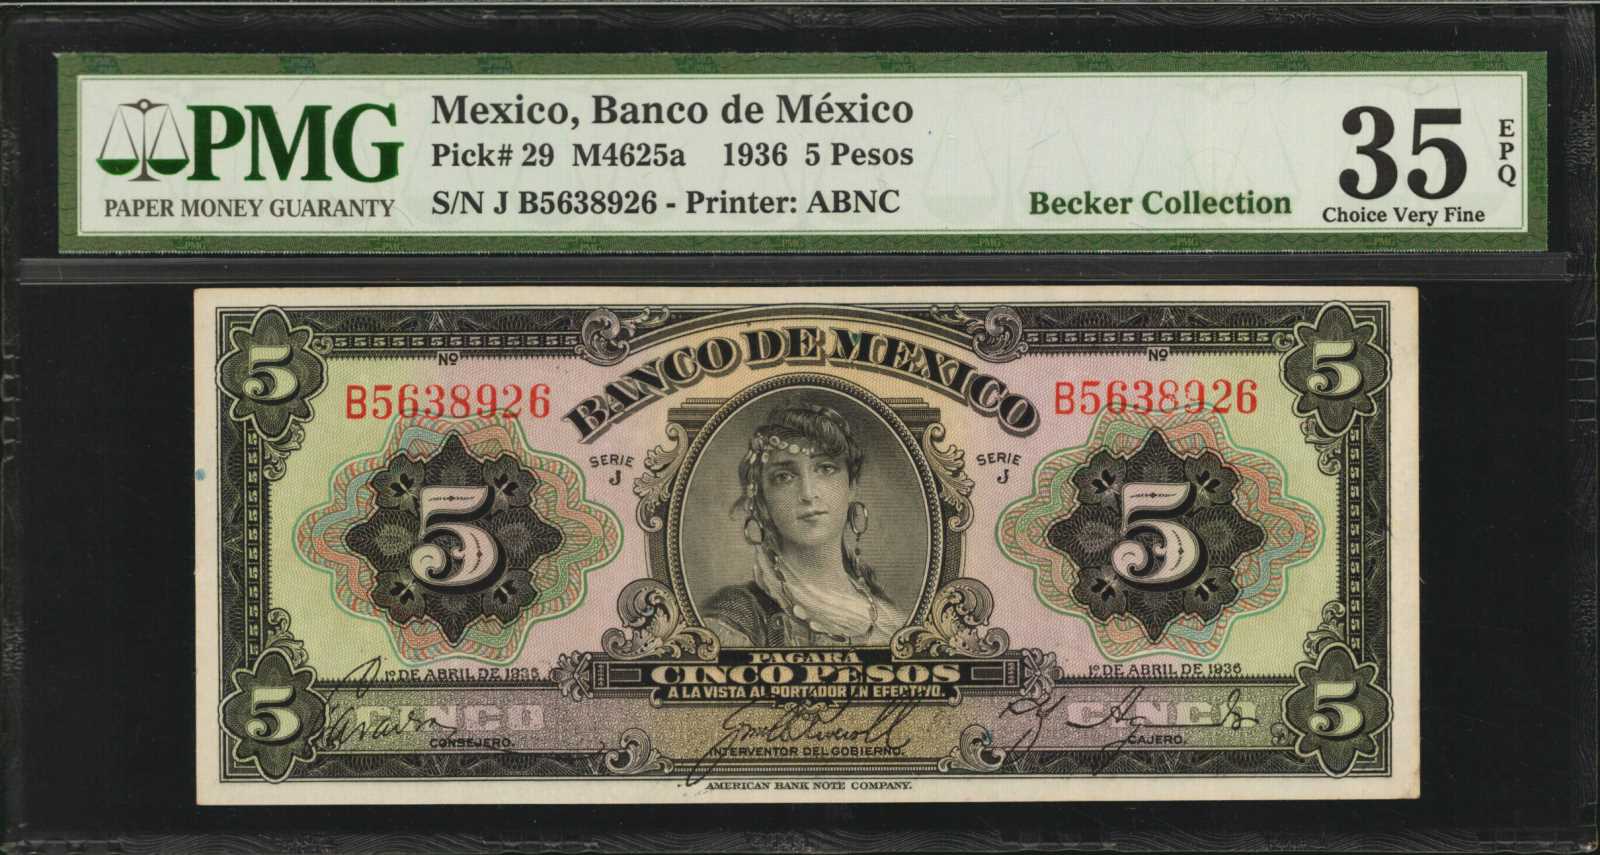 MEXICO. Banco de Mexico. 5 Pesos